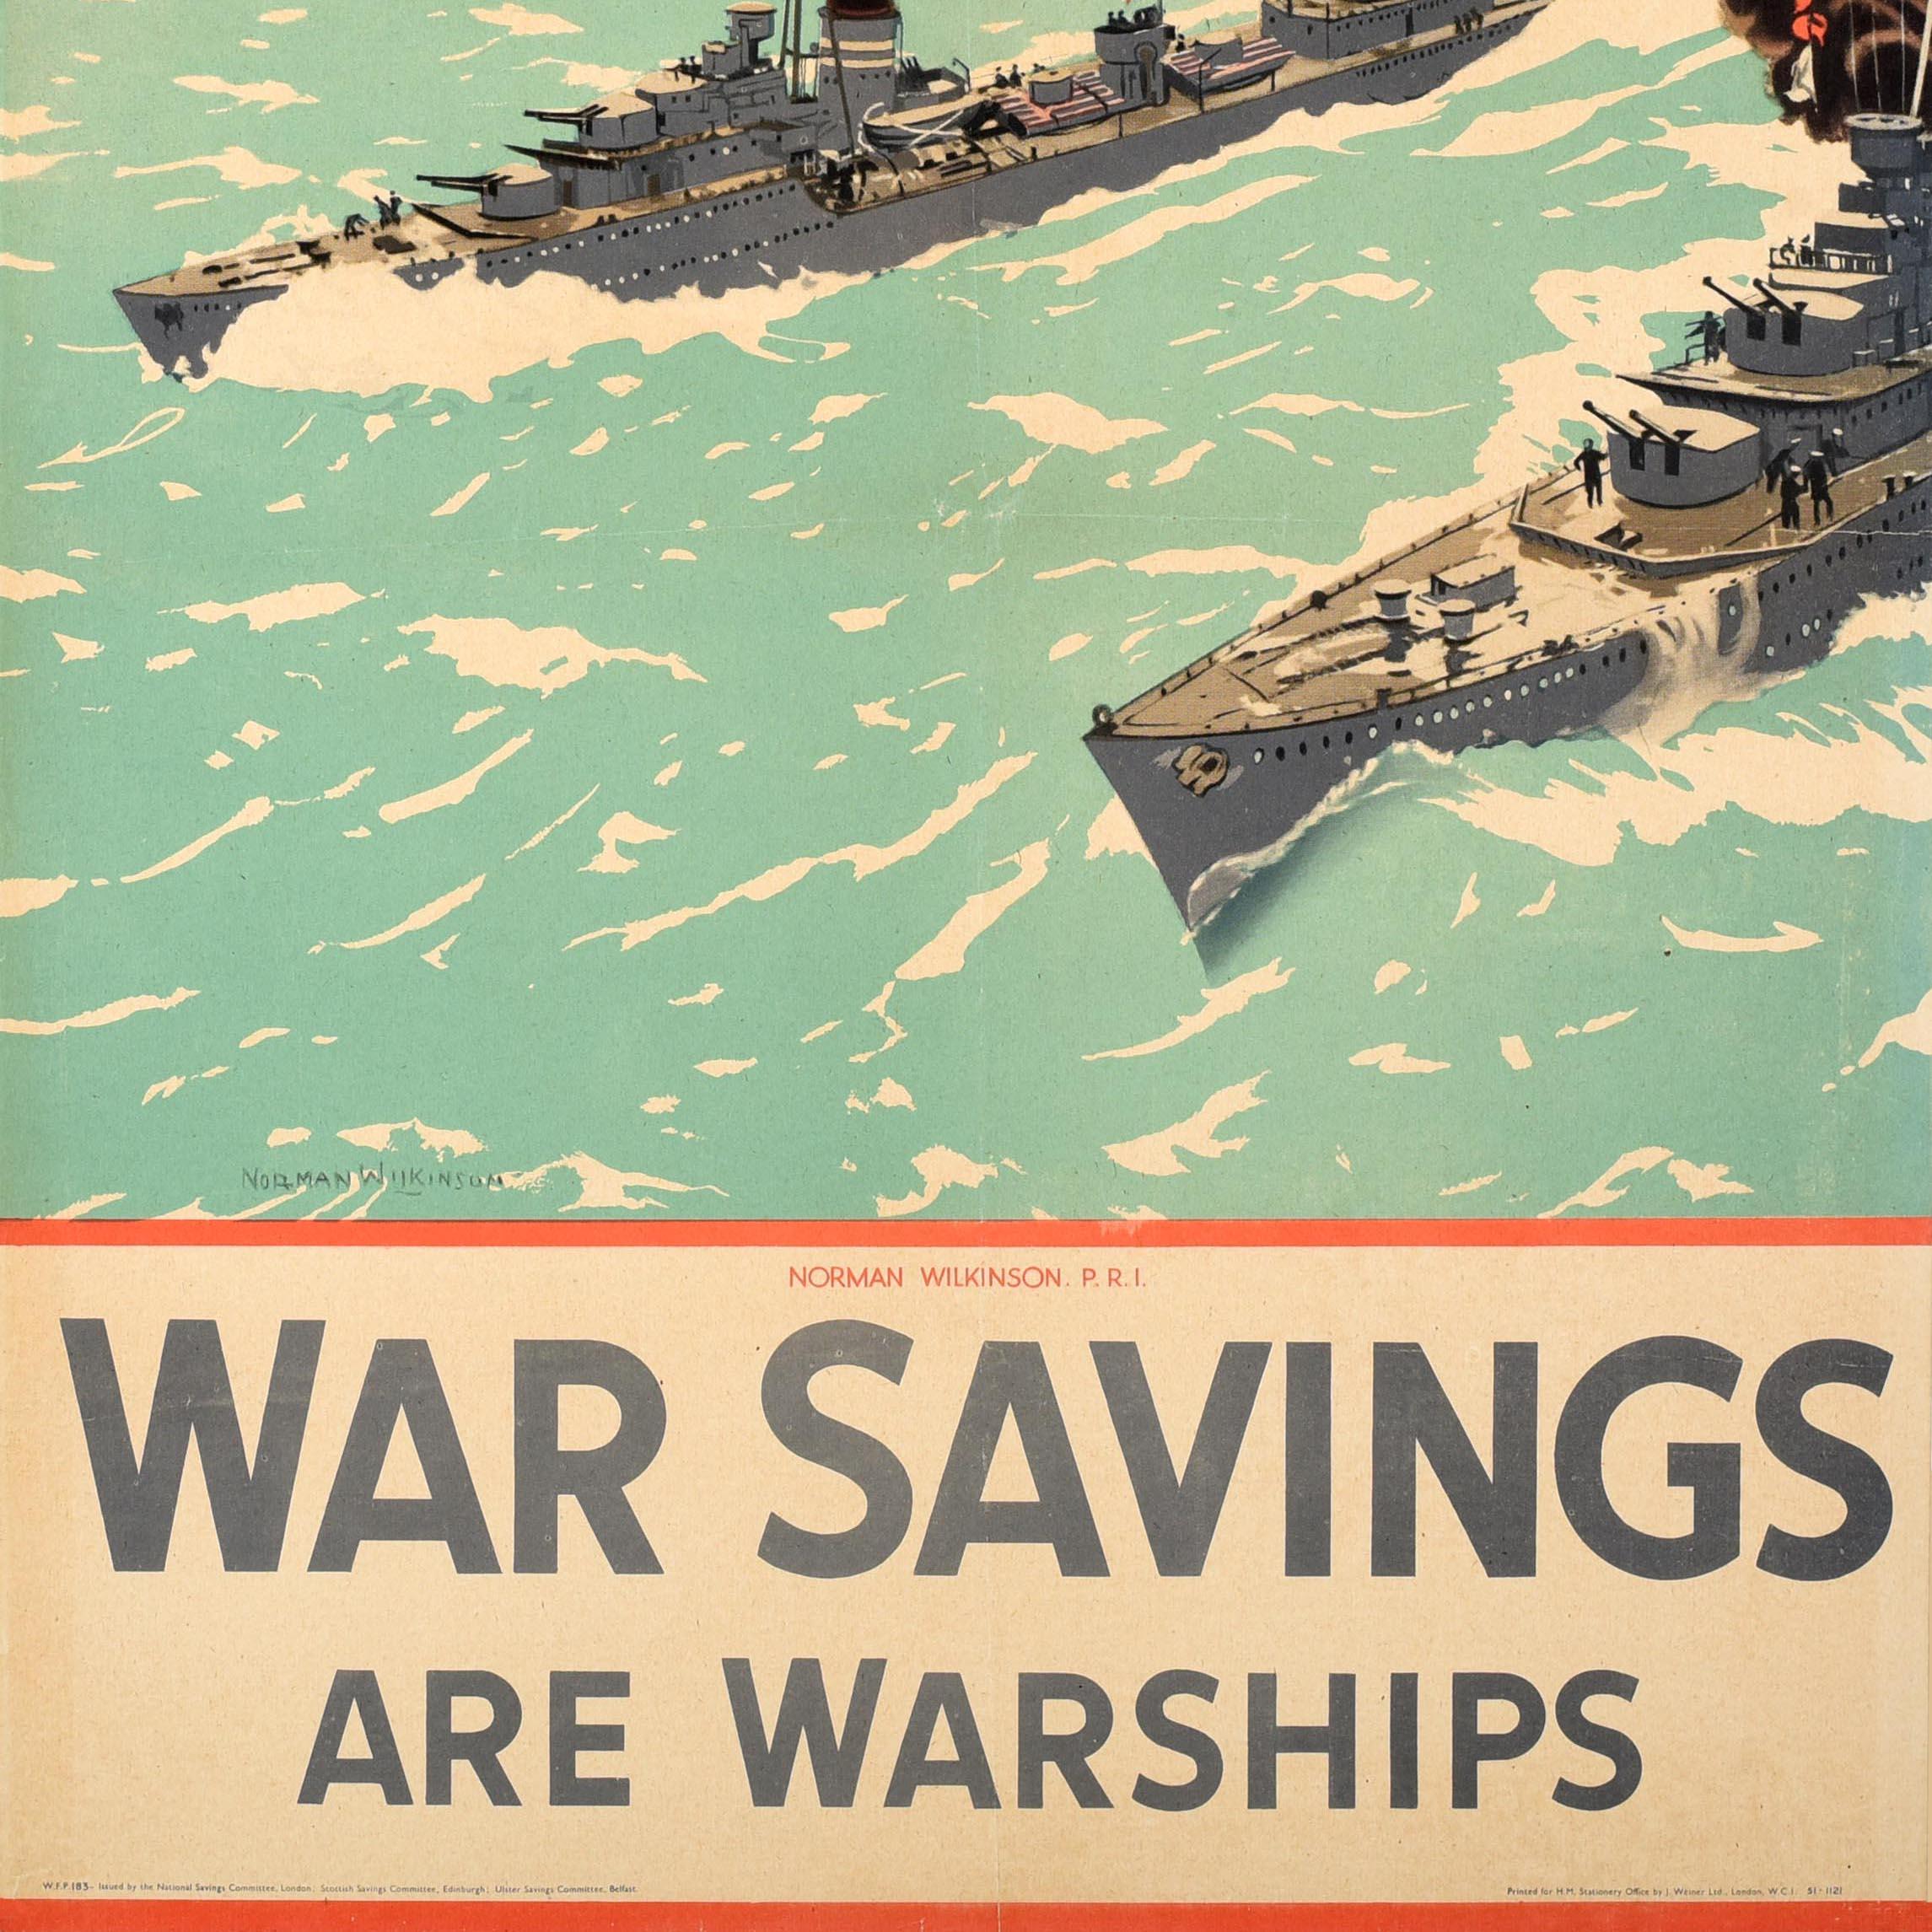 Affiche originale du front intérieur de la Seconde Guerre mondiale, émise pour encourager les gens à acheter des obligations d'épargne de guerre et aider à gagner la guerre. Œuvre d'art dramatique de l'artiste et illustrateur britannique Norman